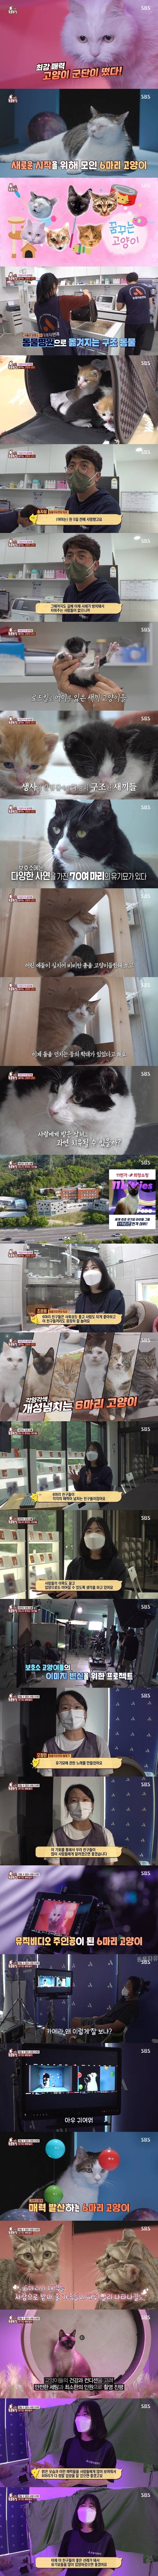 제이홉이 갑자기 고양이 뮤비를 추천한 이유.jpg | 인스티즈